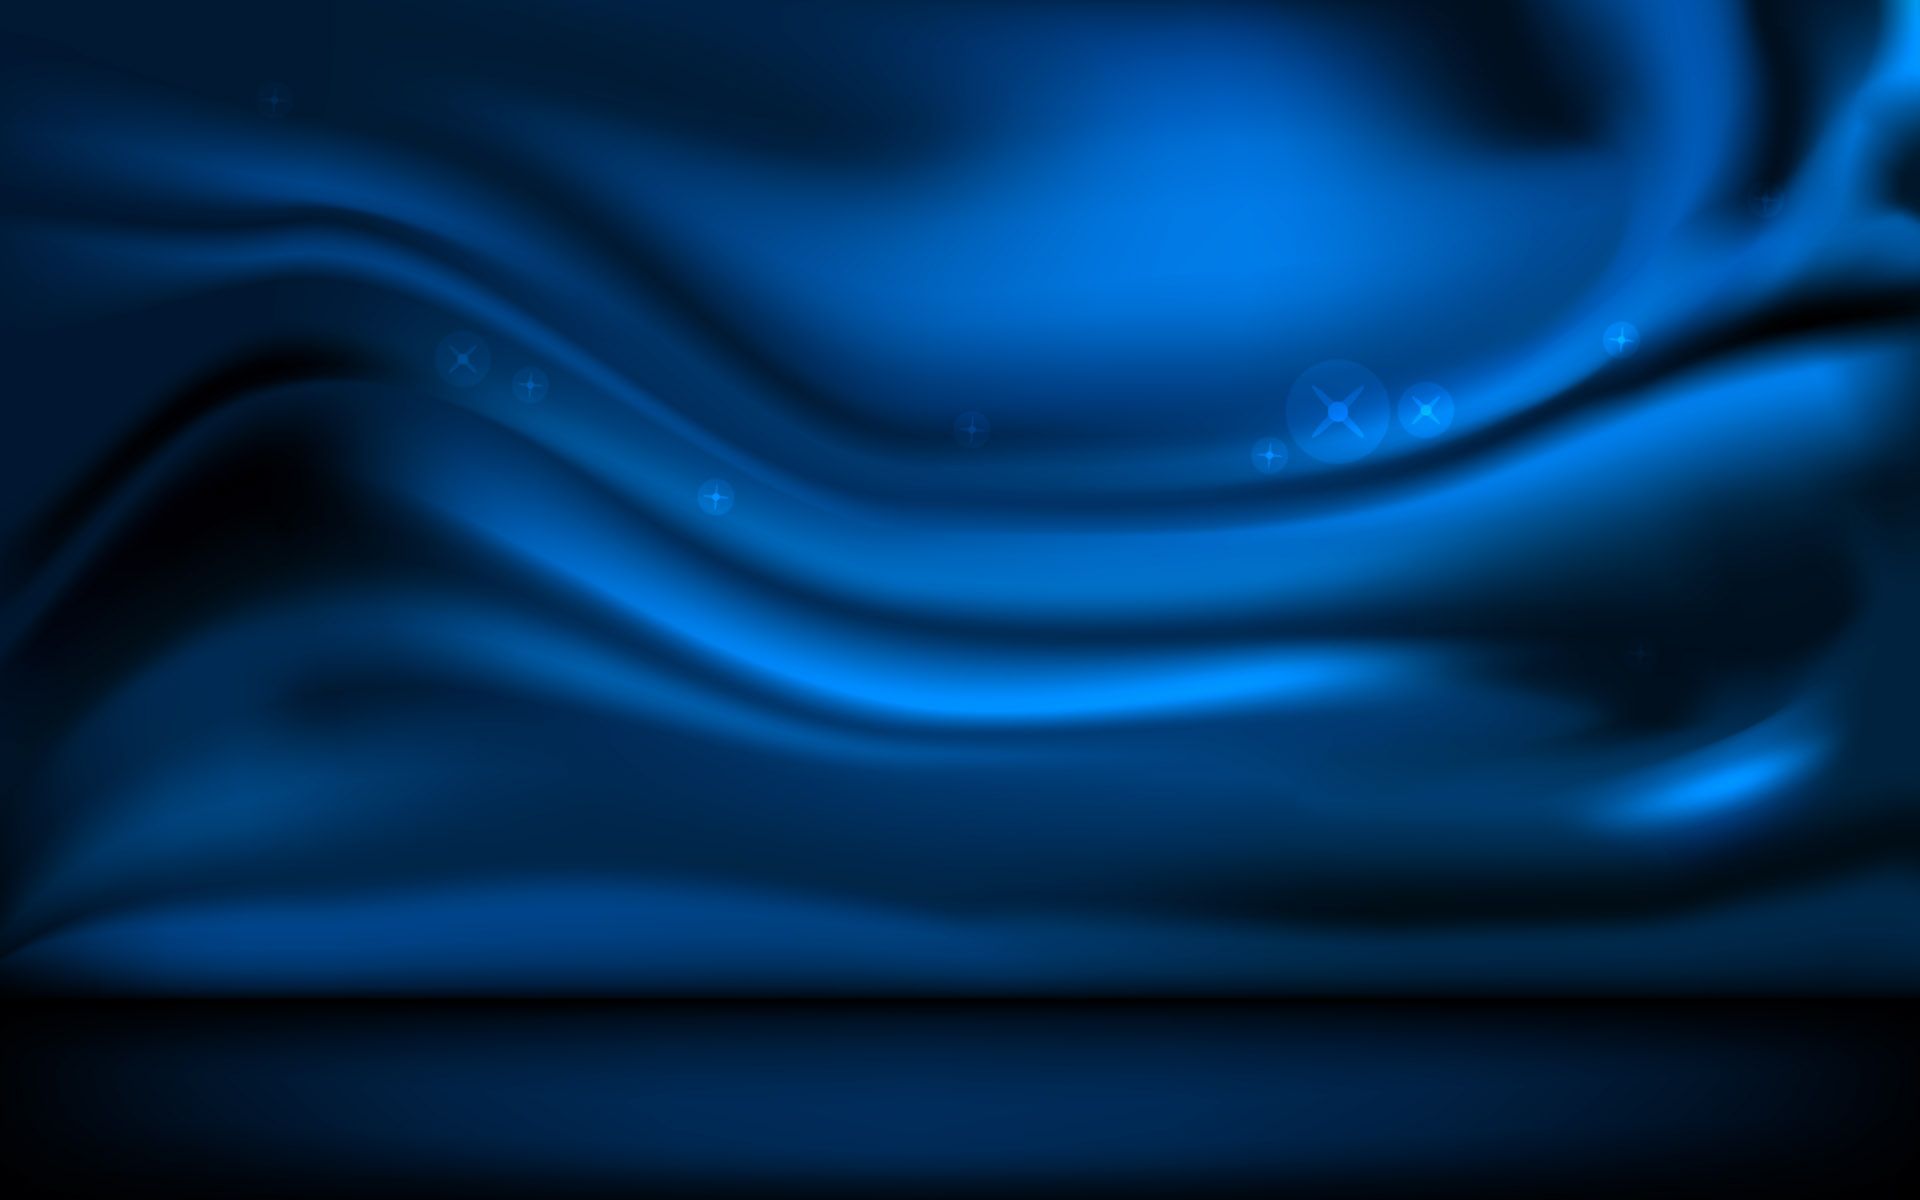 Dark Blue Wallpaper Hd | Pixelstalk.net